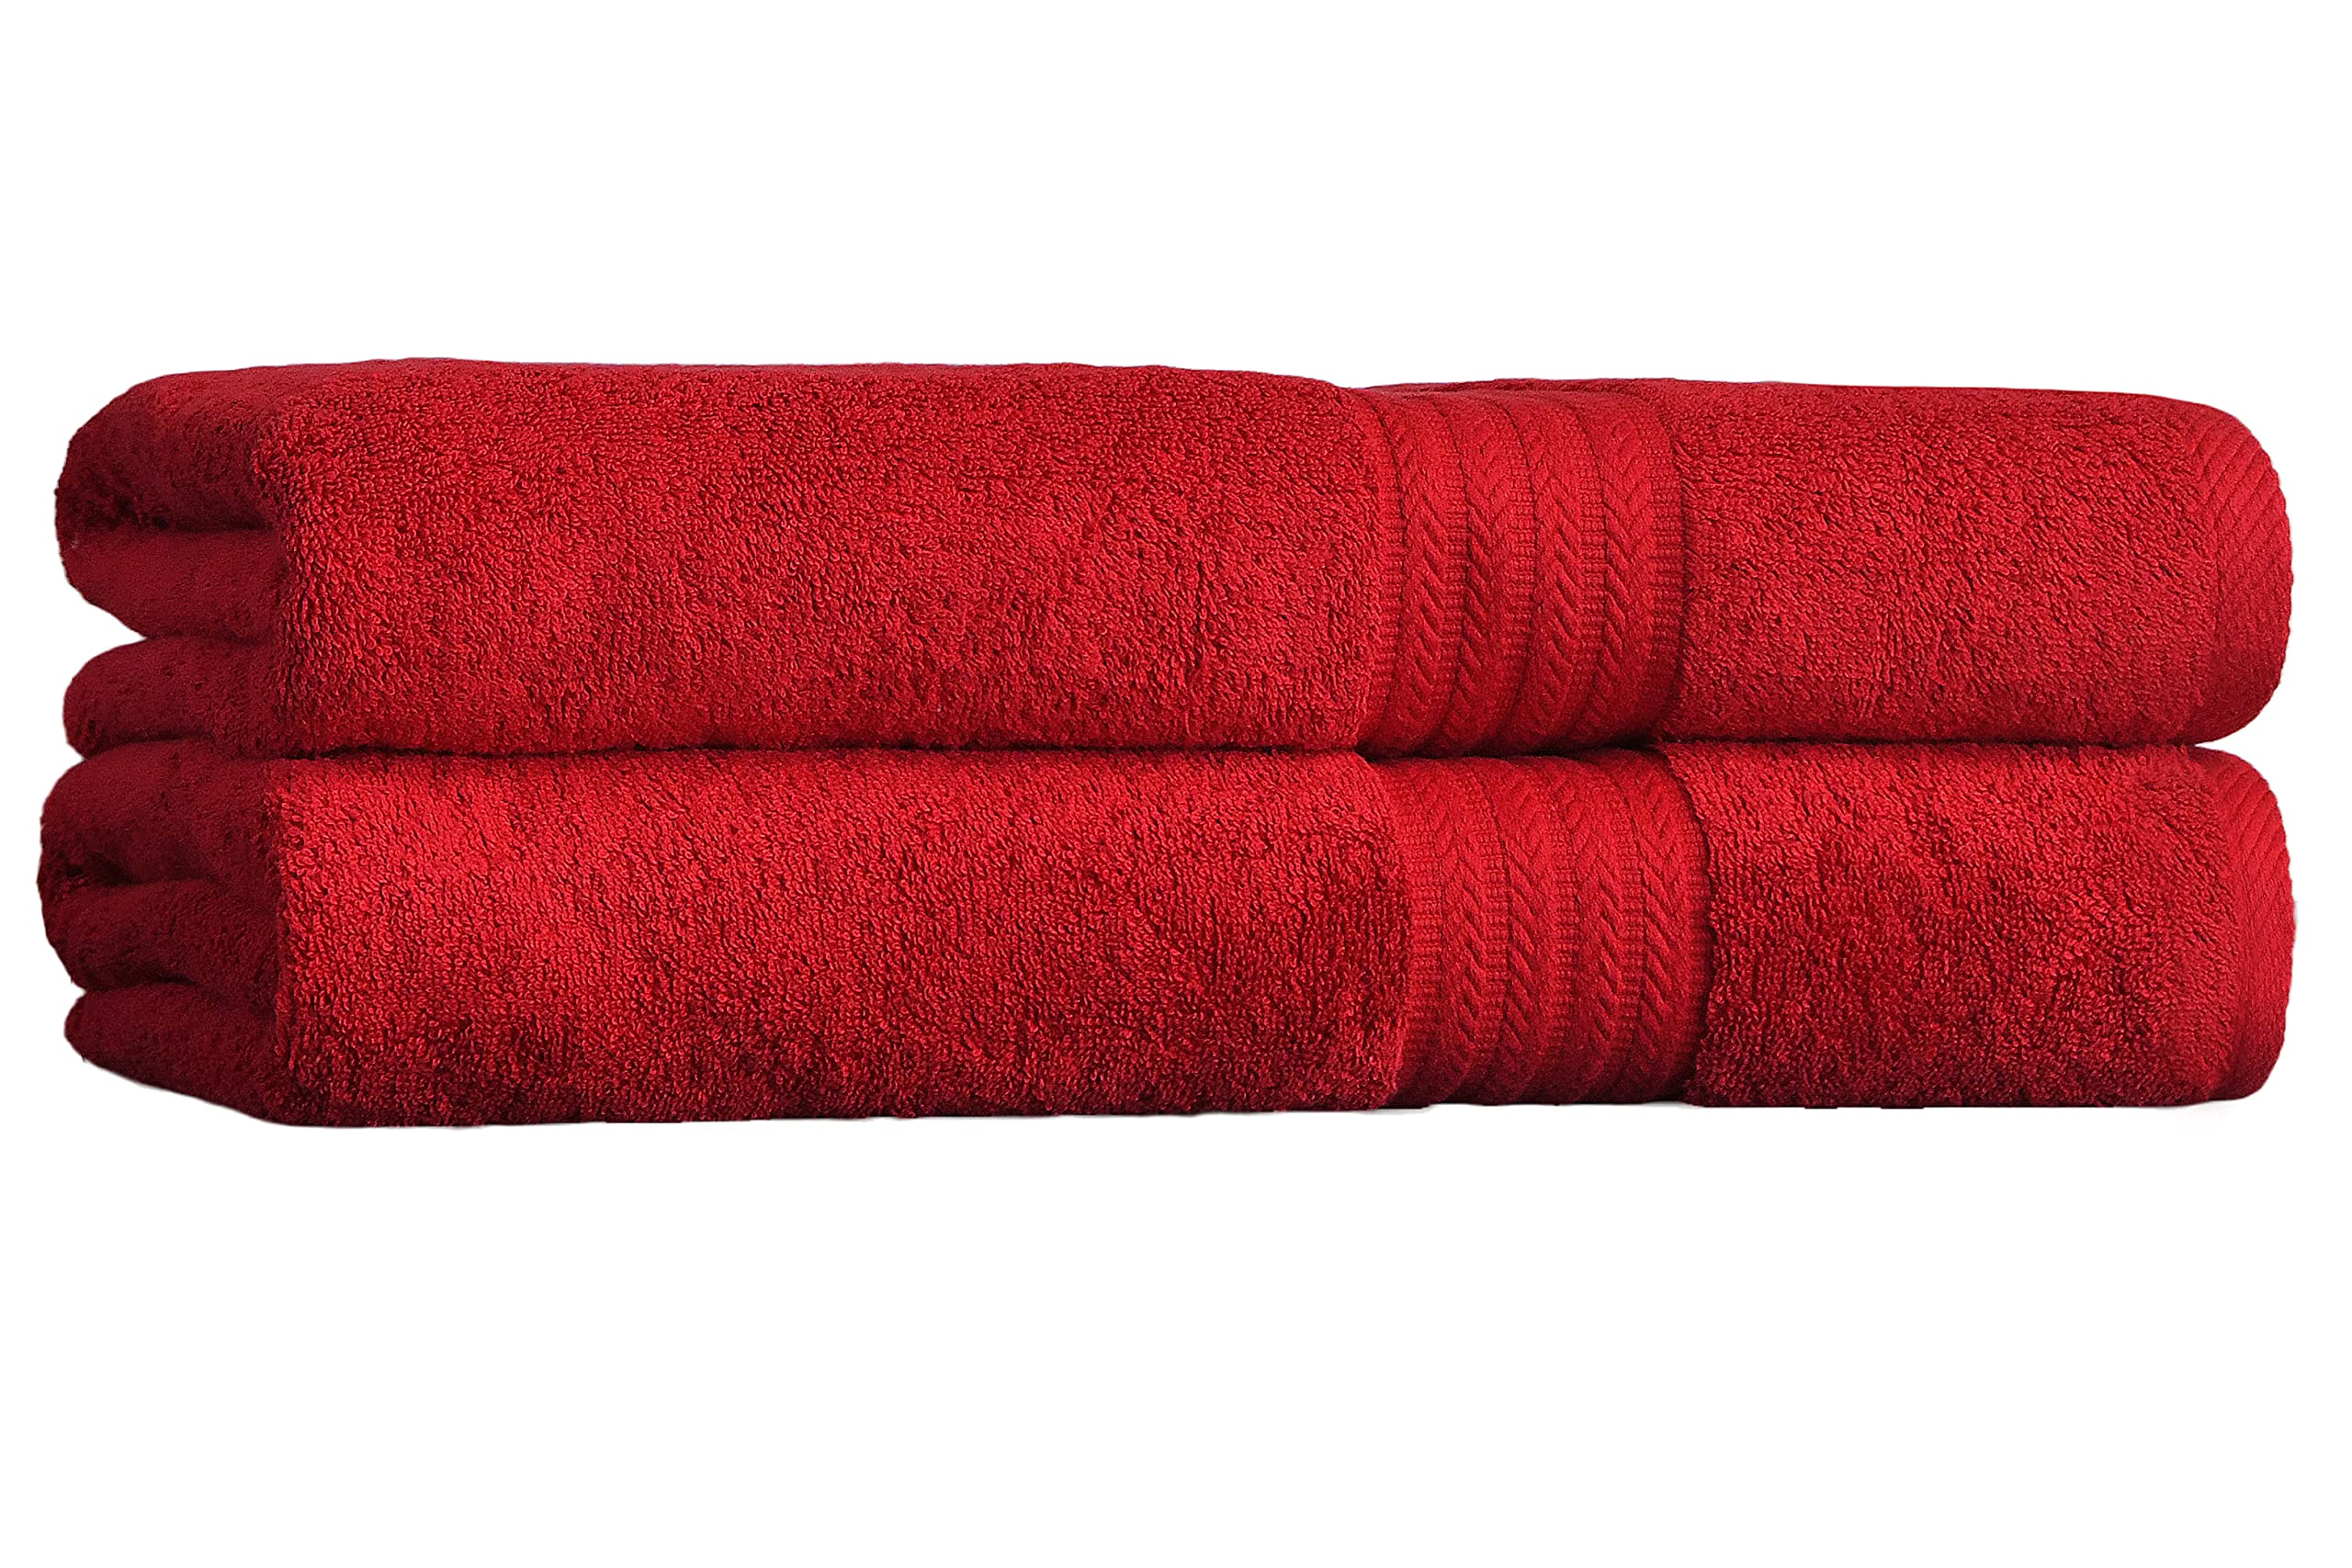 Premium Long Staple Cotton Bath Towel Set: Soft & Absorbent